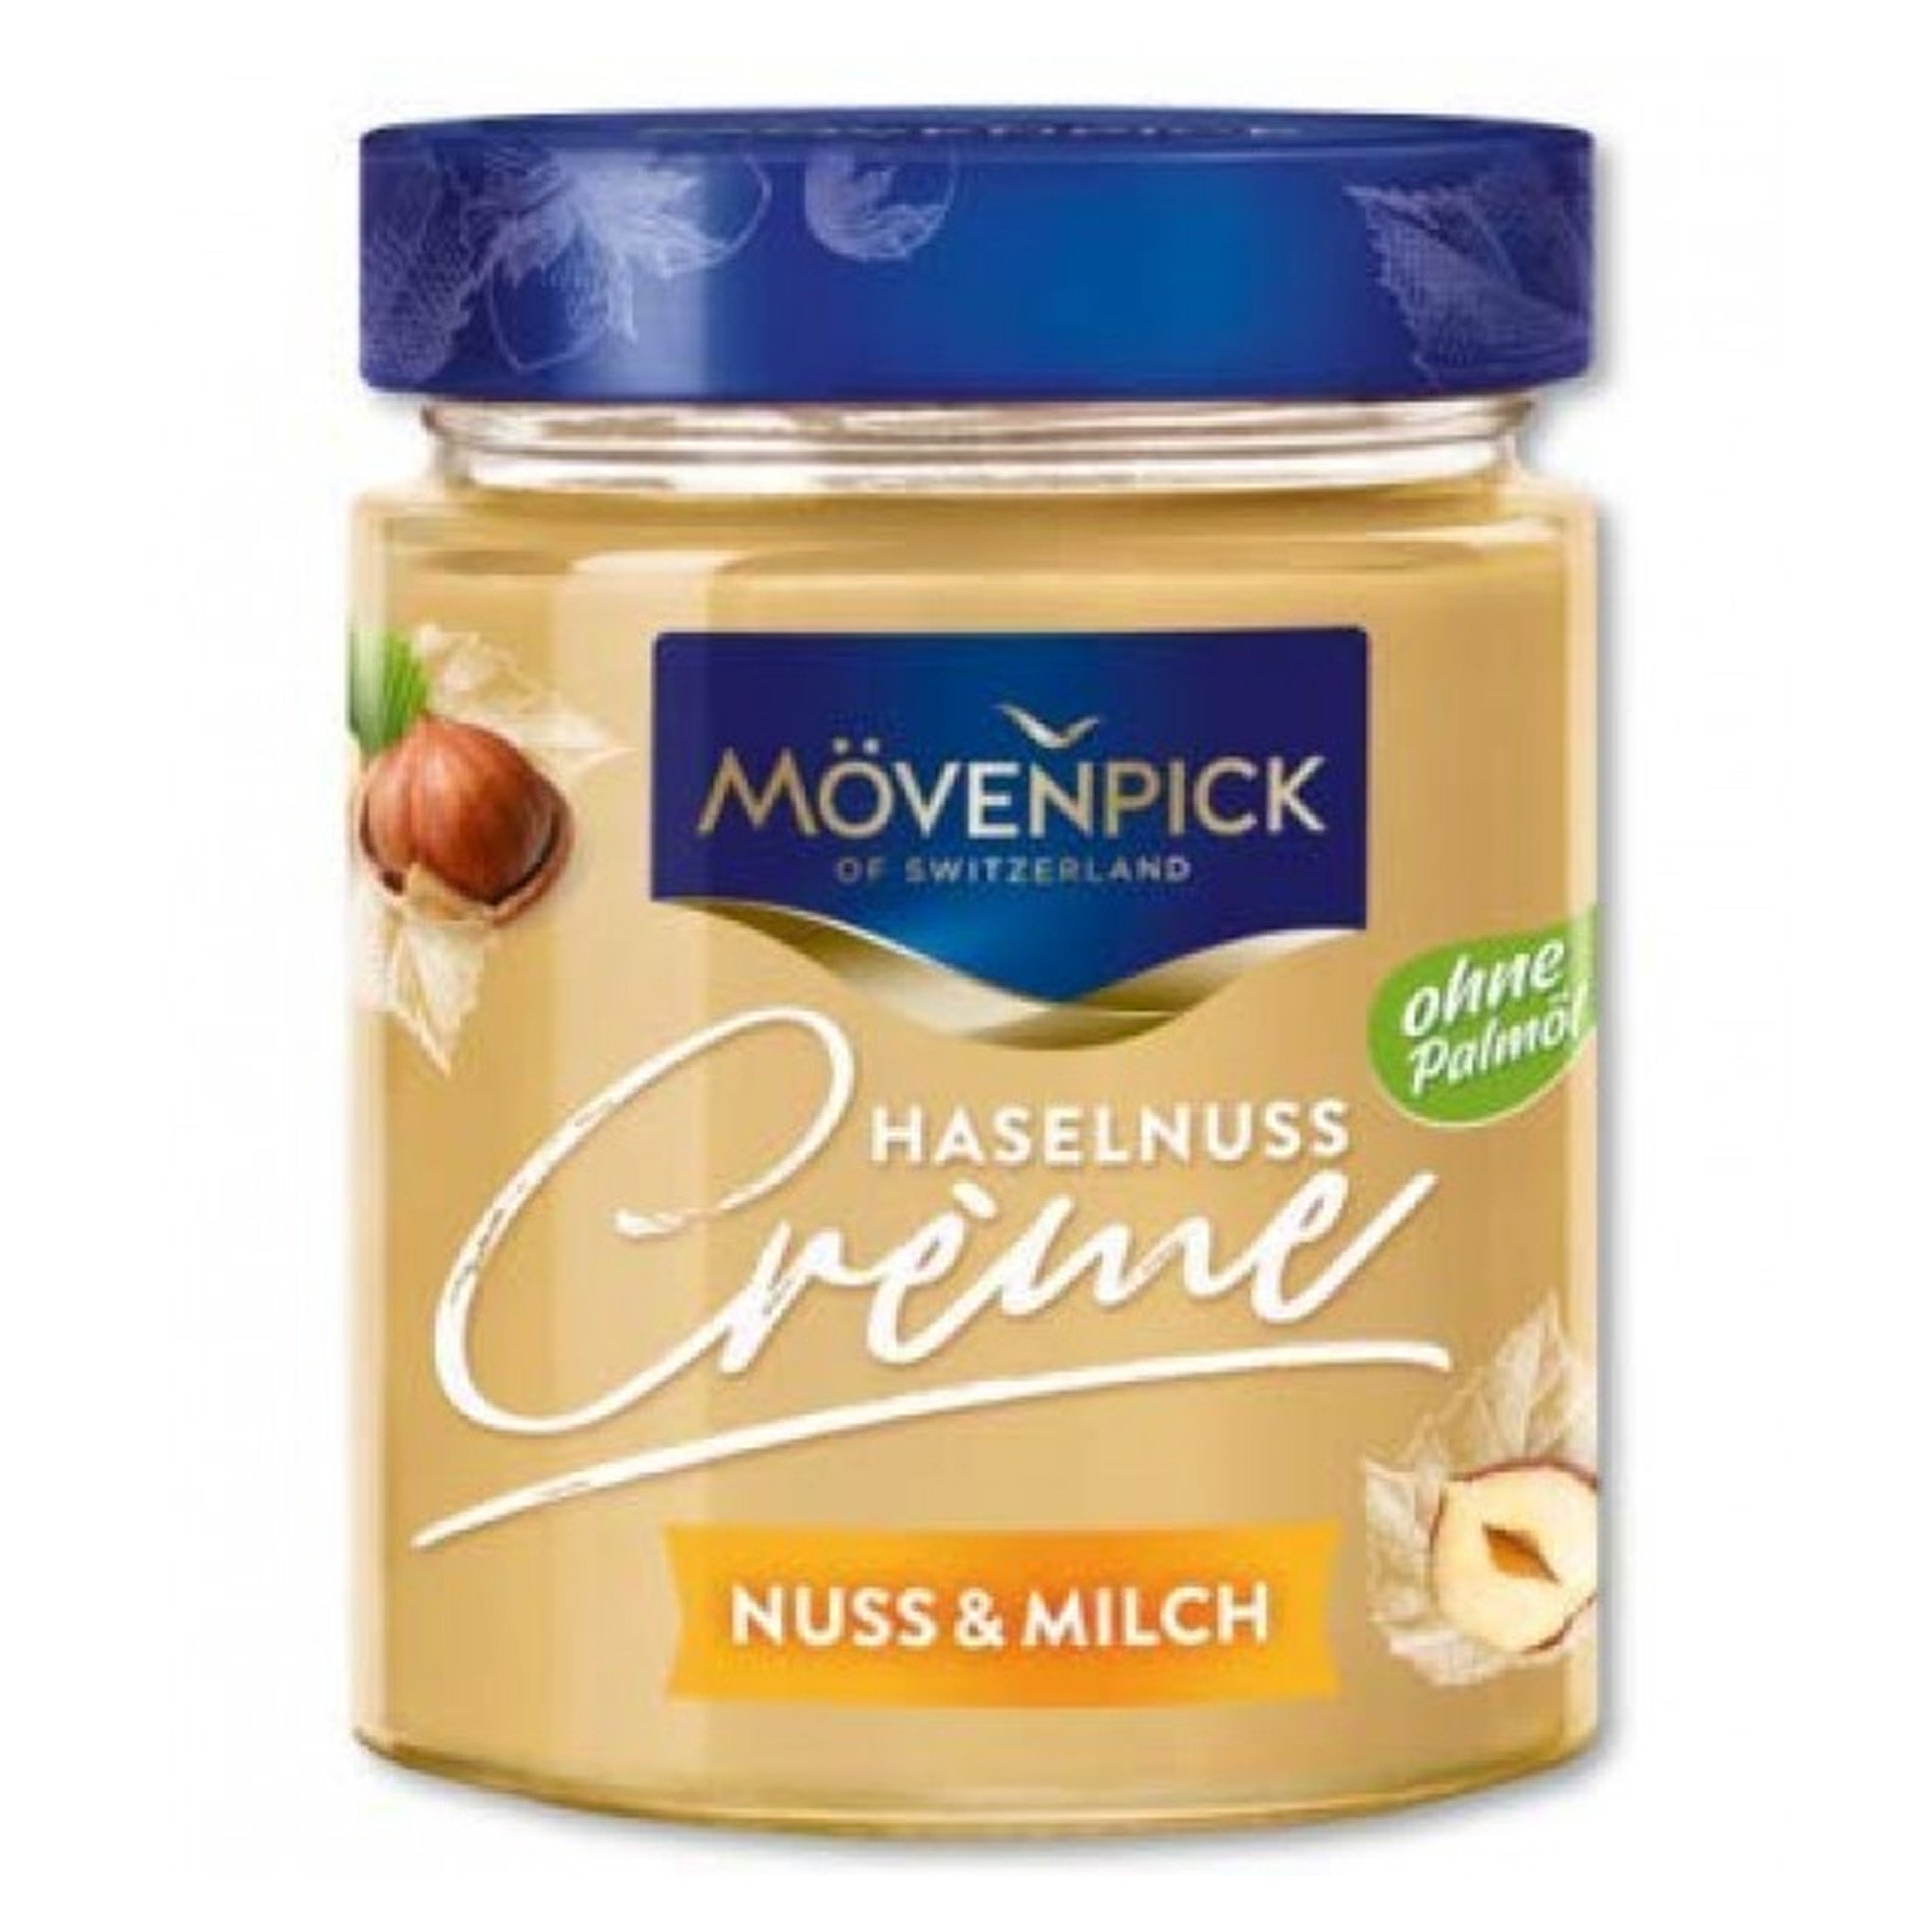 Movenpick White Hazelnut ממרח שוקולד חלב אגוזים של מונבנפיק - להיט חדש !